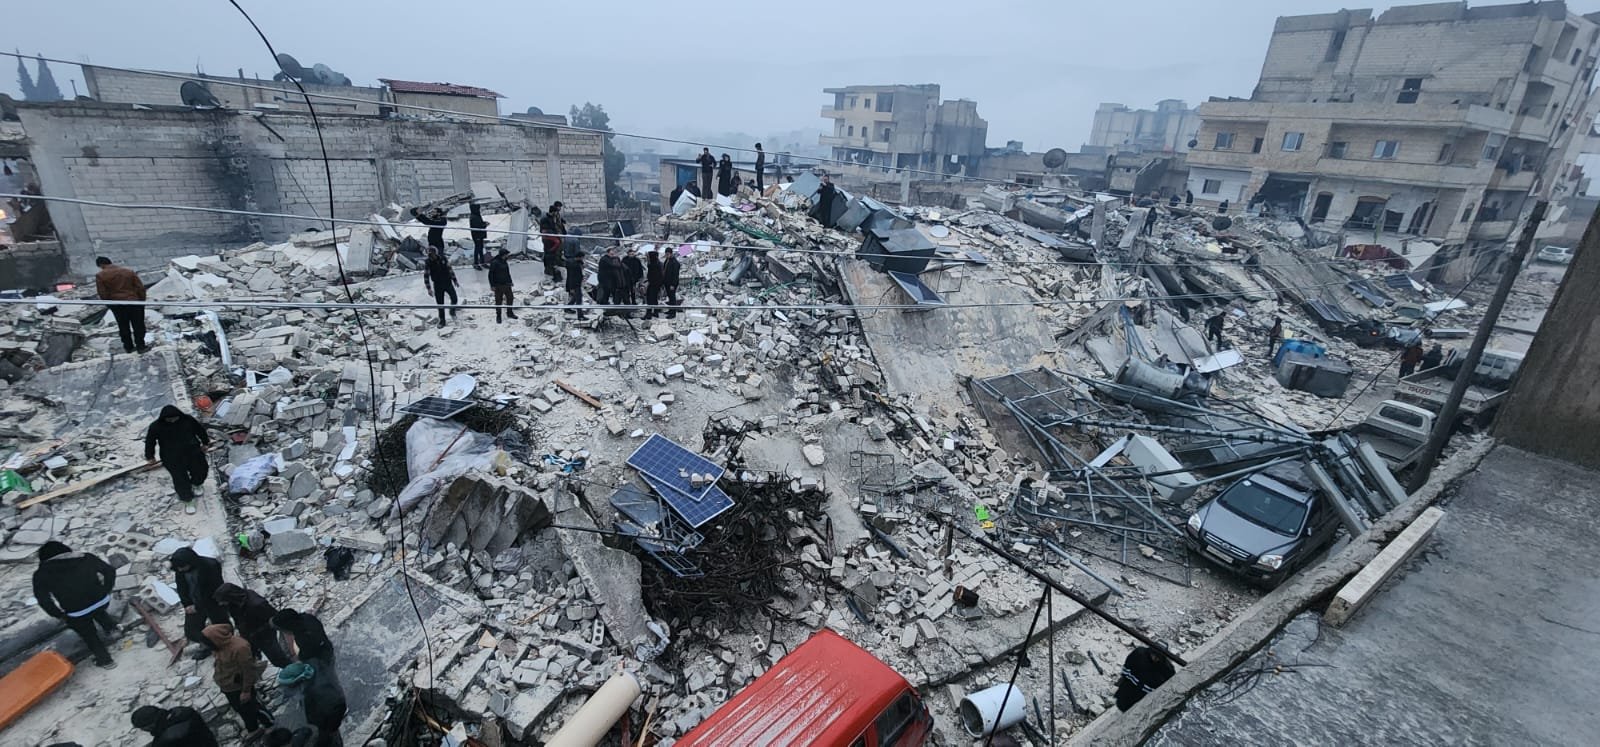 أردوغان يتوجه إلى مقر إدارة الكوارث .. وعدد قتلى الزلزال يقترب إلى 300-7